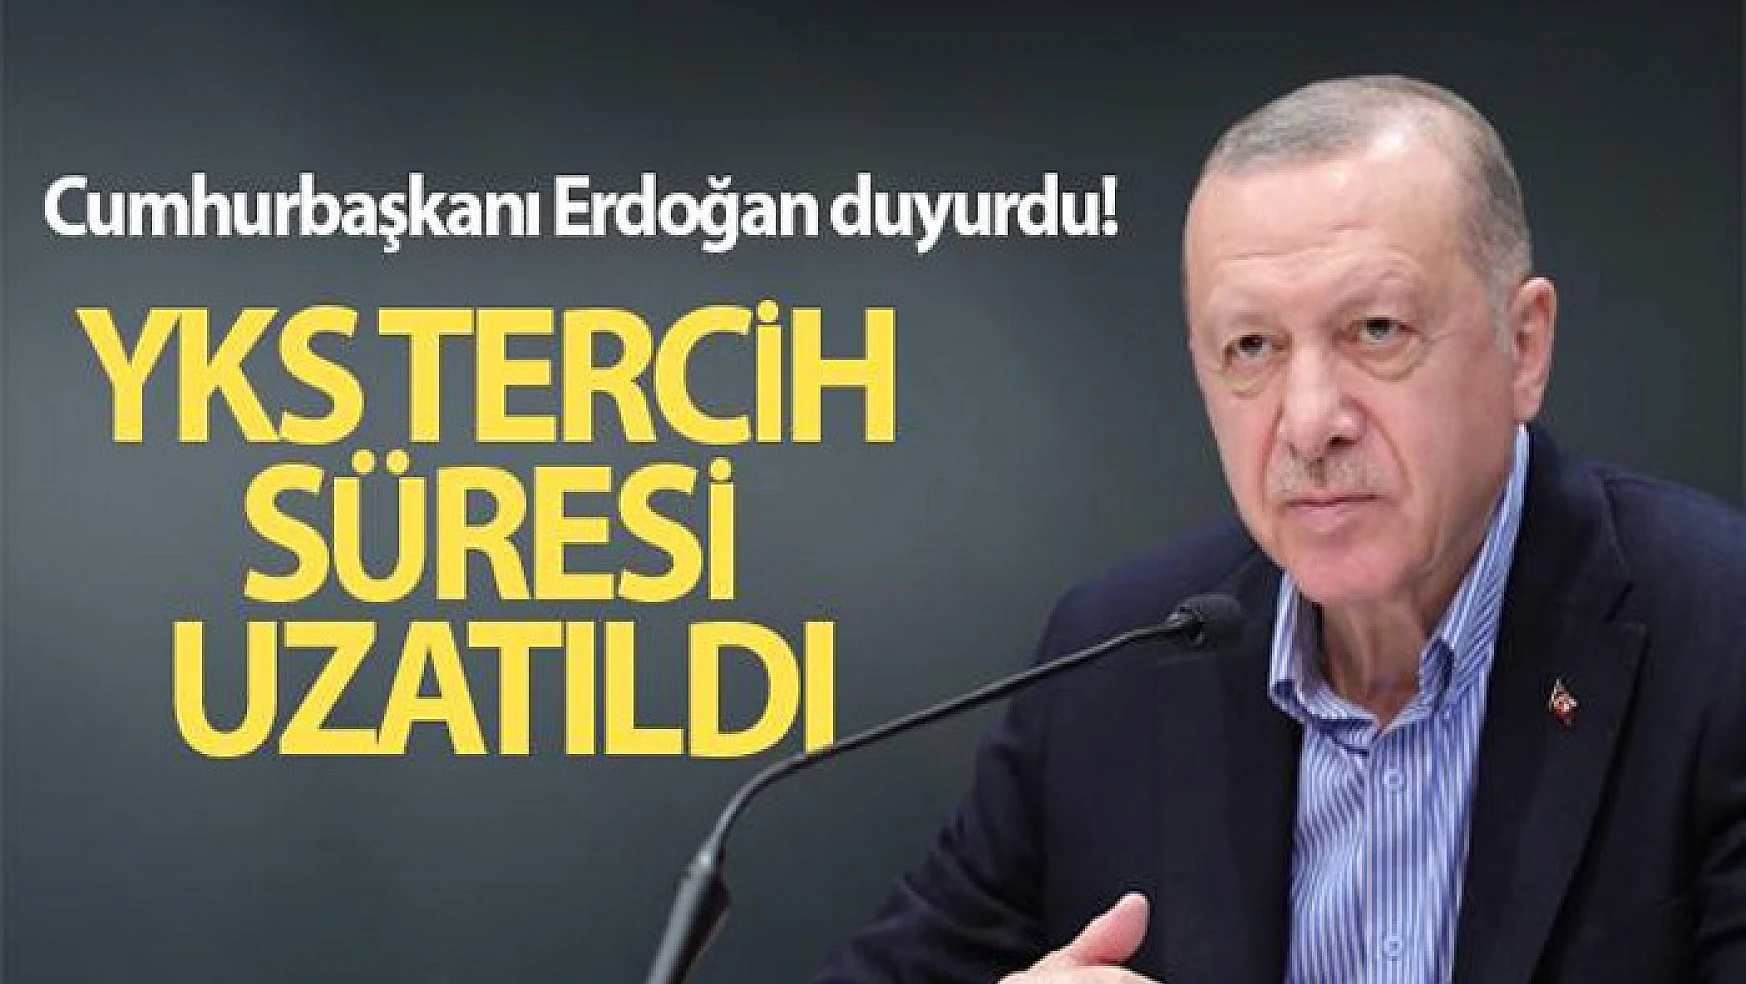 Cumhurbaşkanı Erdoğan duyurdu! YKS tercih süresi uzatıldı